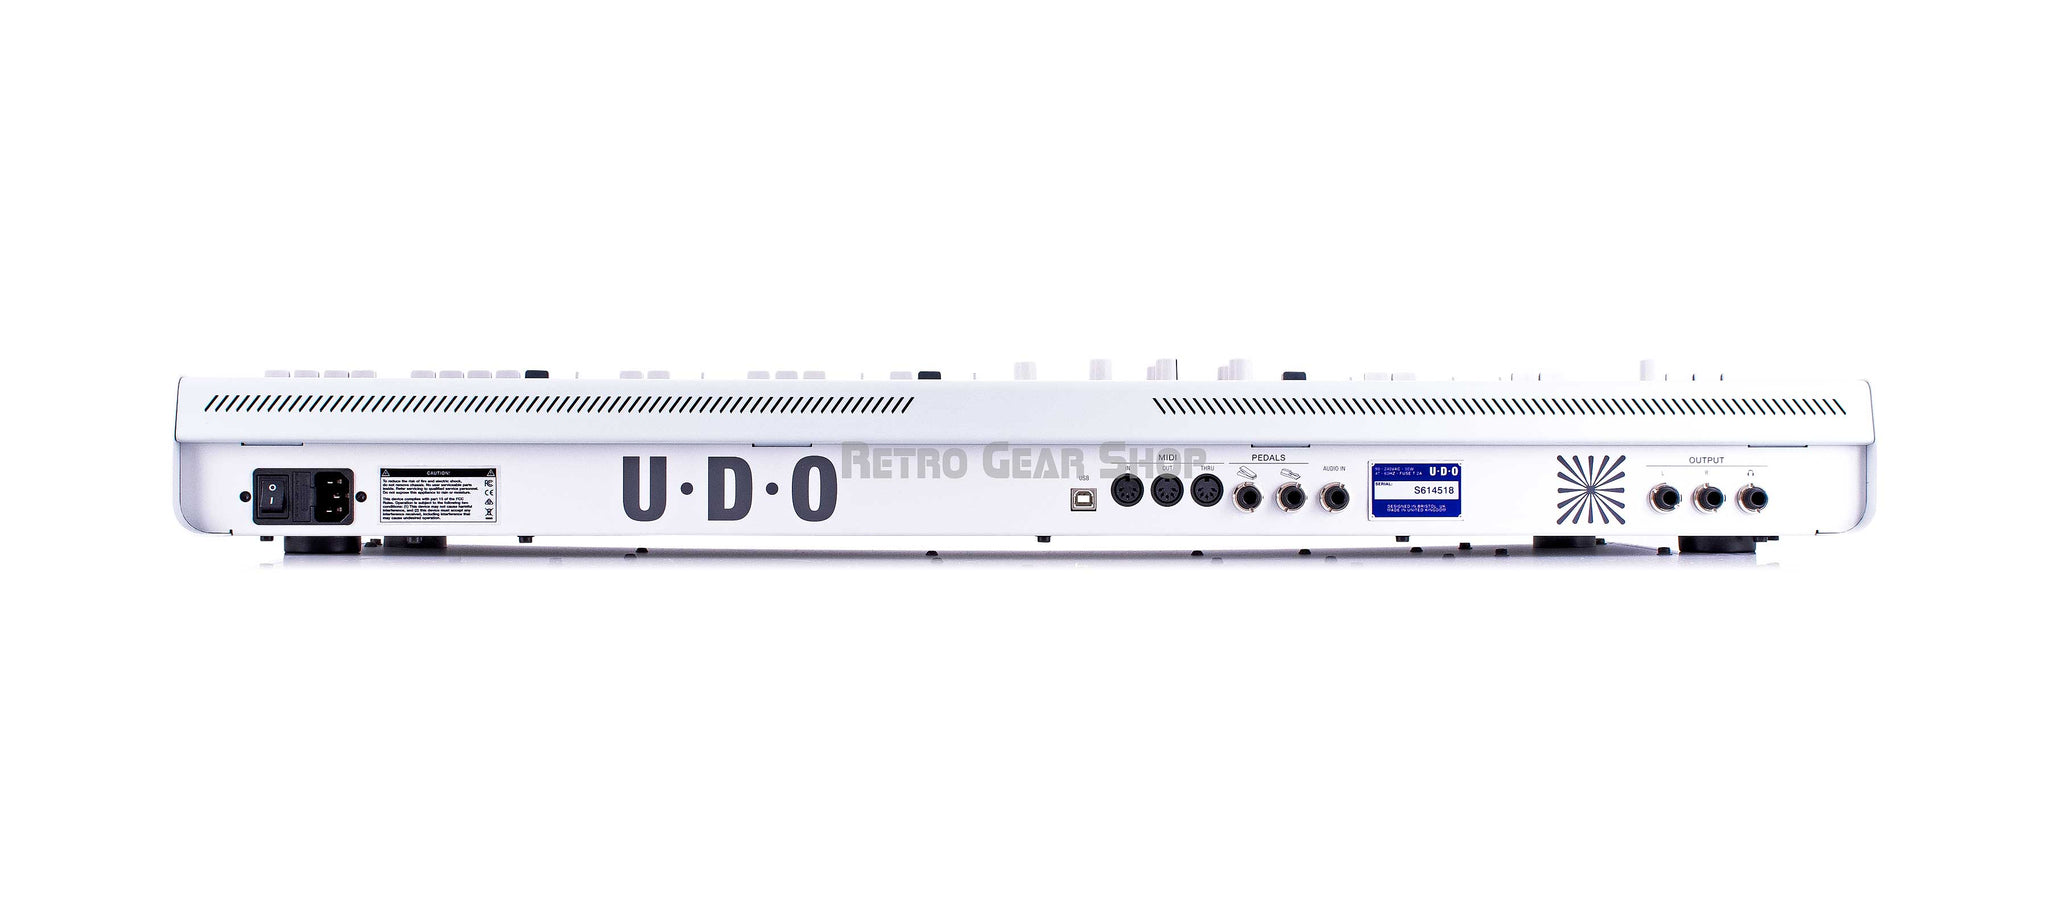 Udo Super 6 White Rear